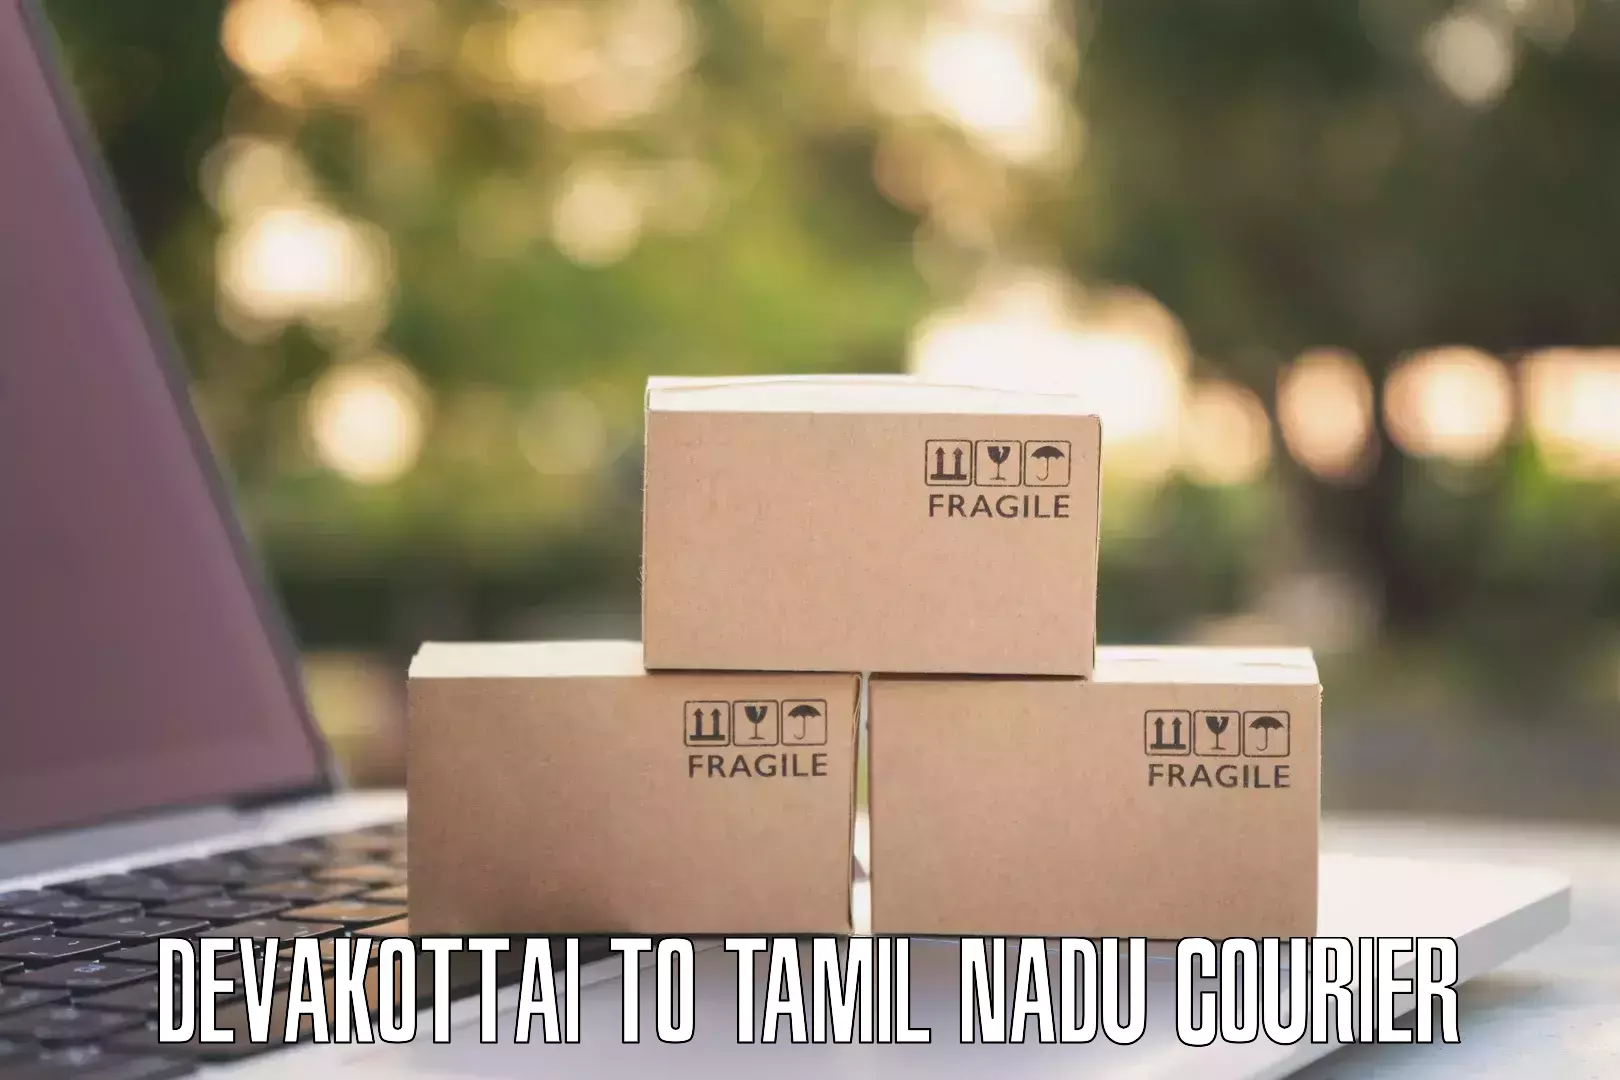 Modern courier technology Devakottai to Gudalur